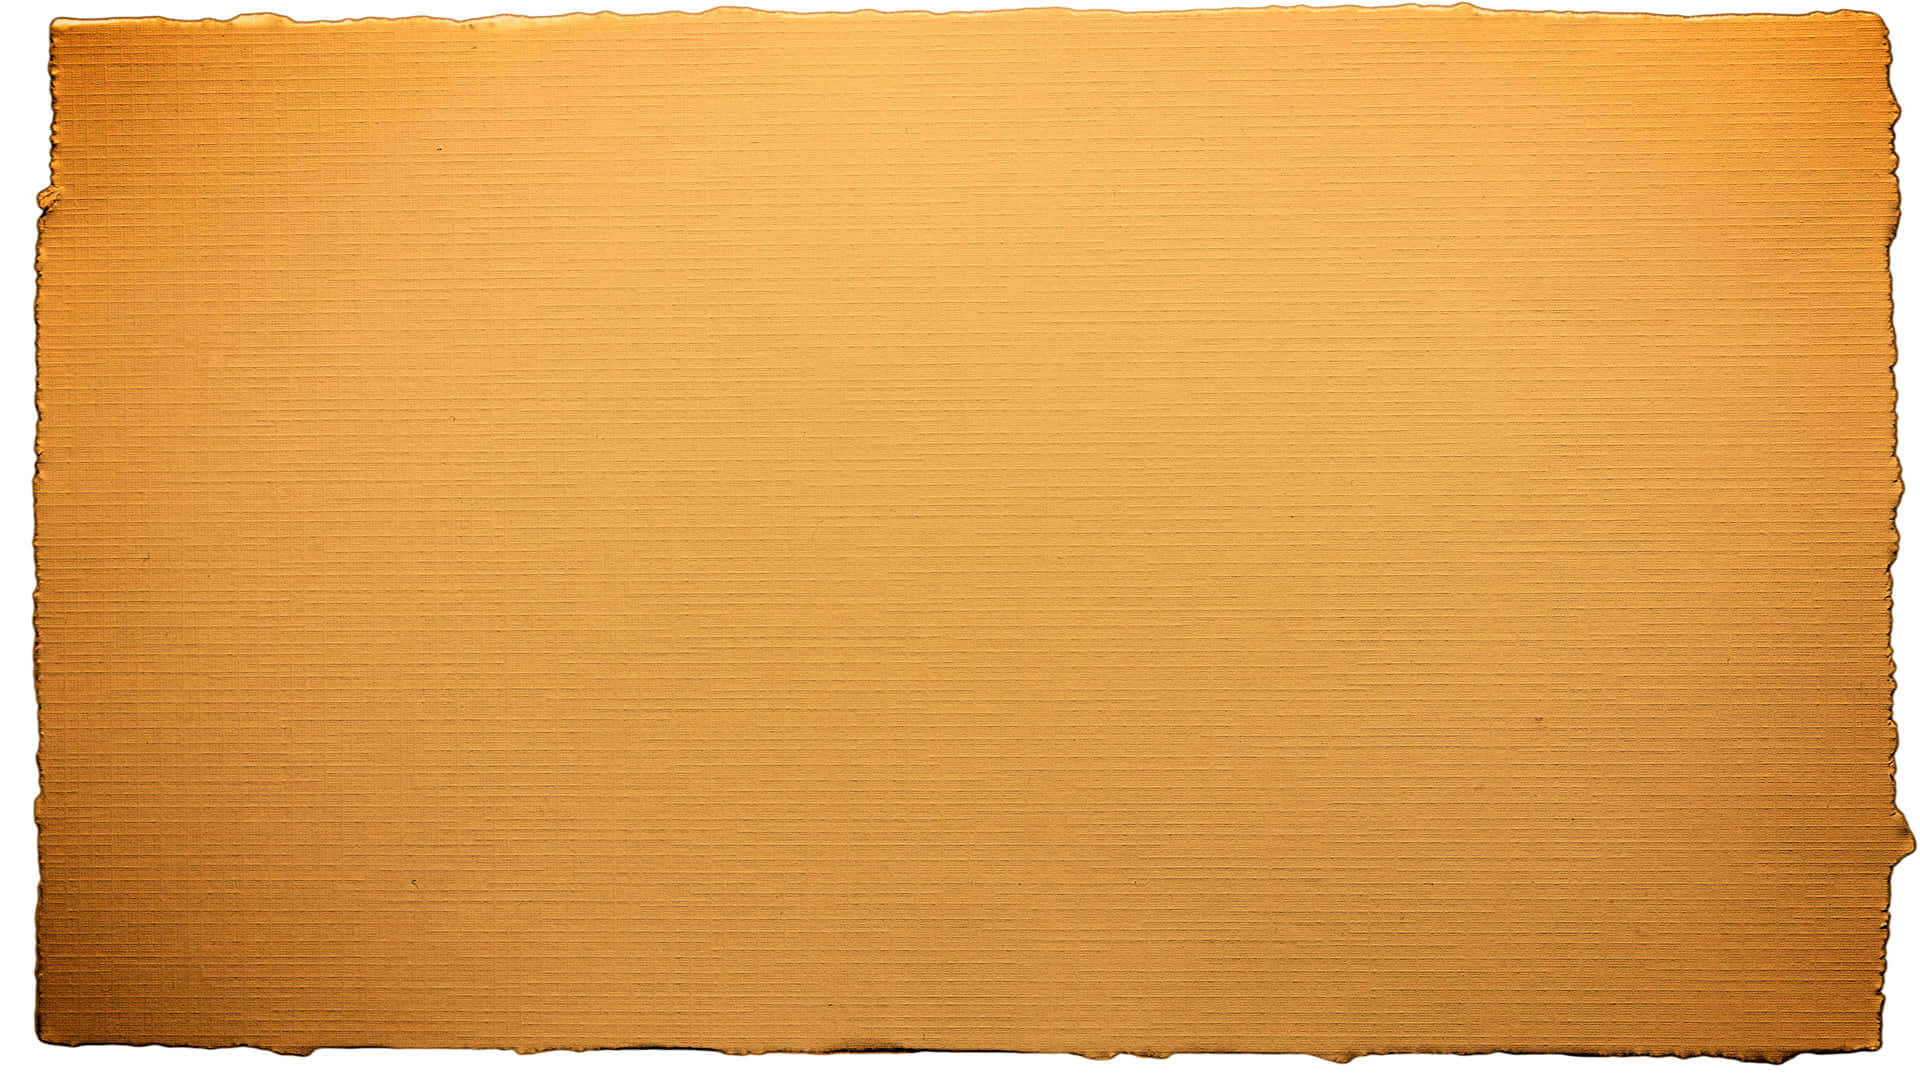 Revet Papir 1920 X 1080 Wallpaper